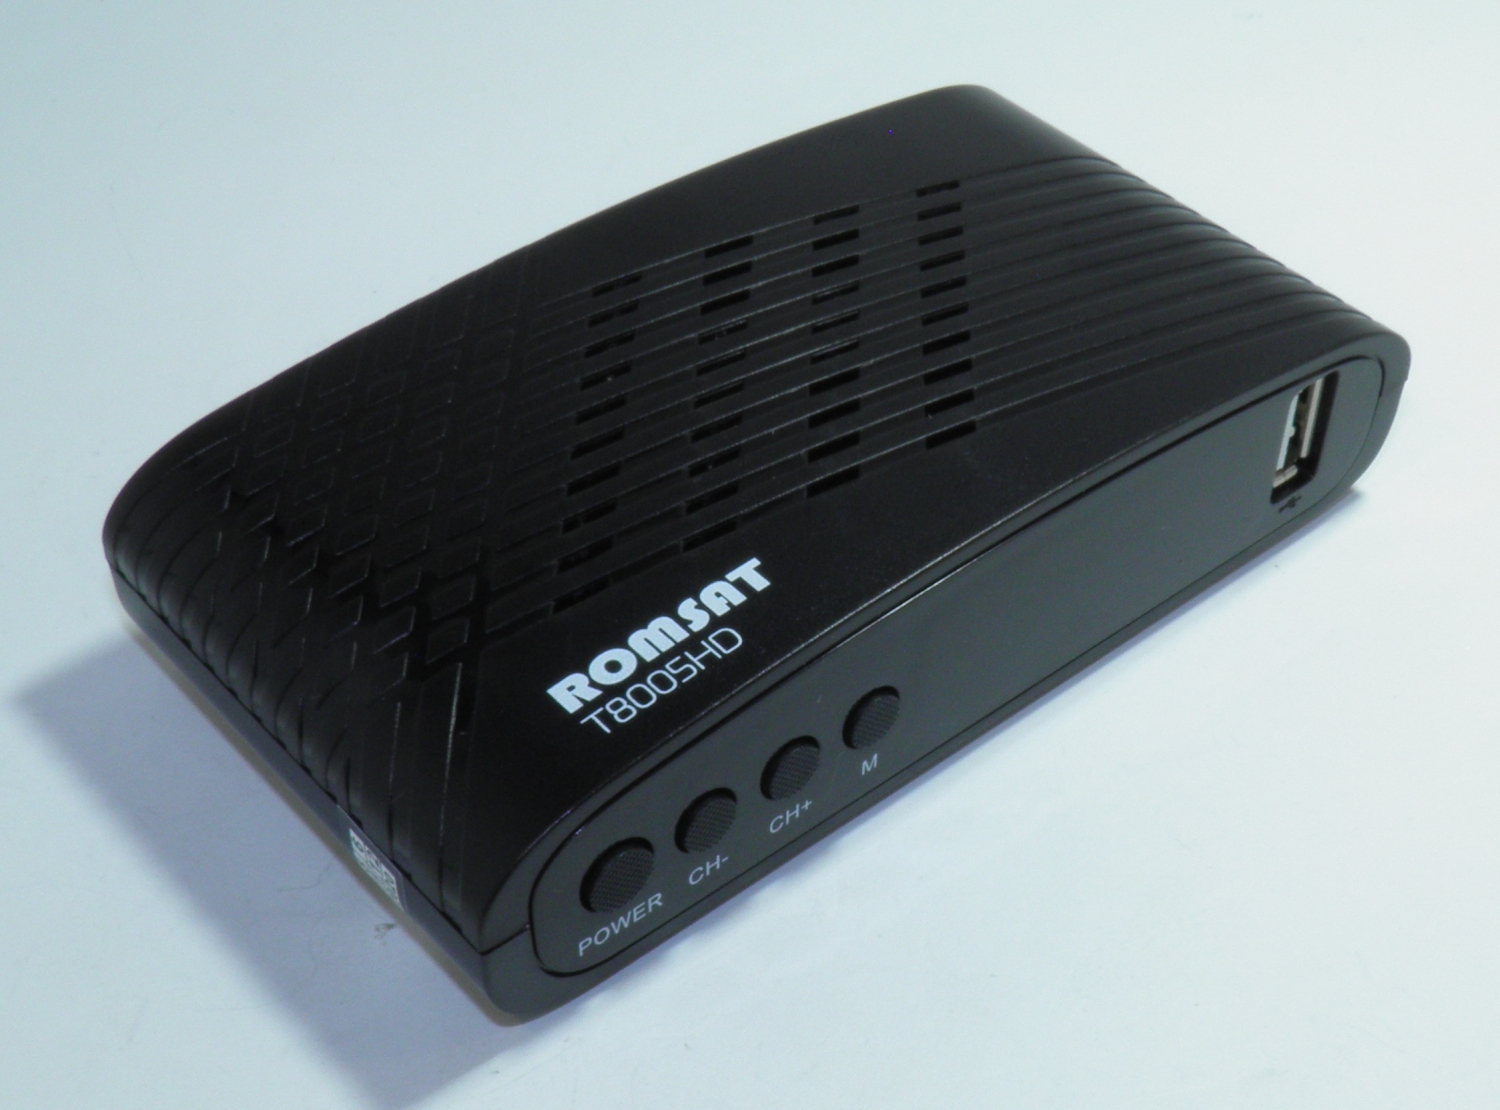 ТВ-тюнер Romsat T8005HD - зображення 3